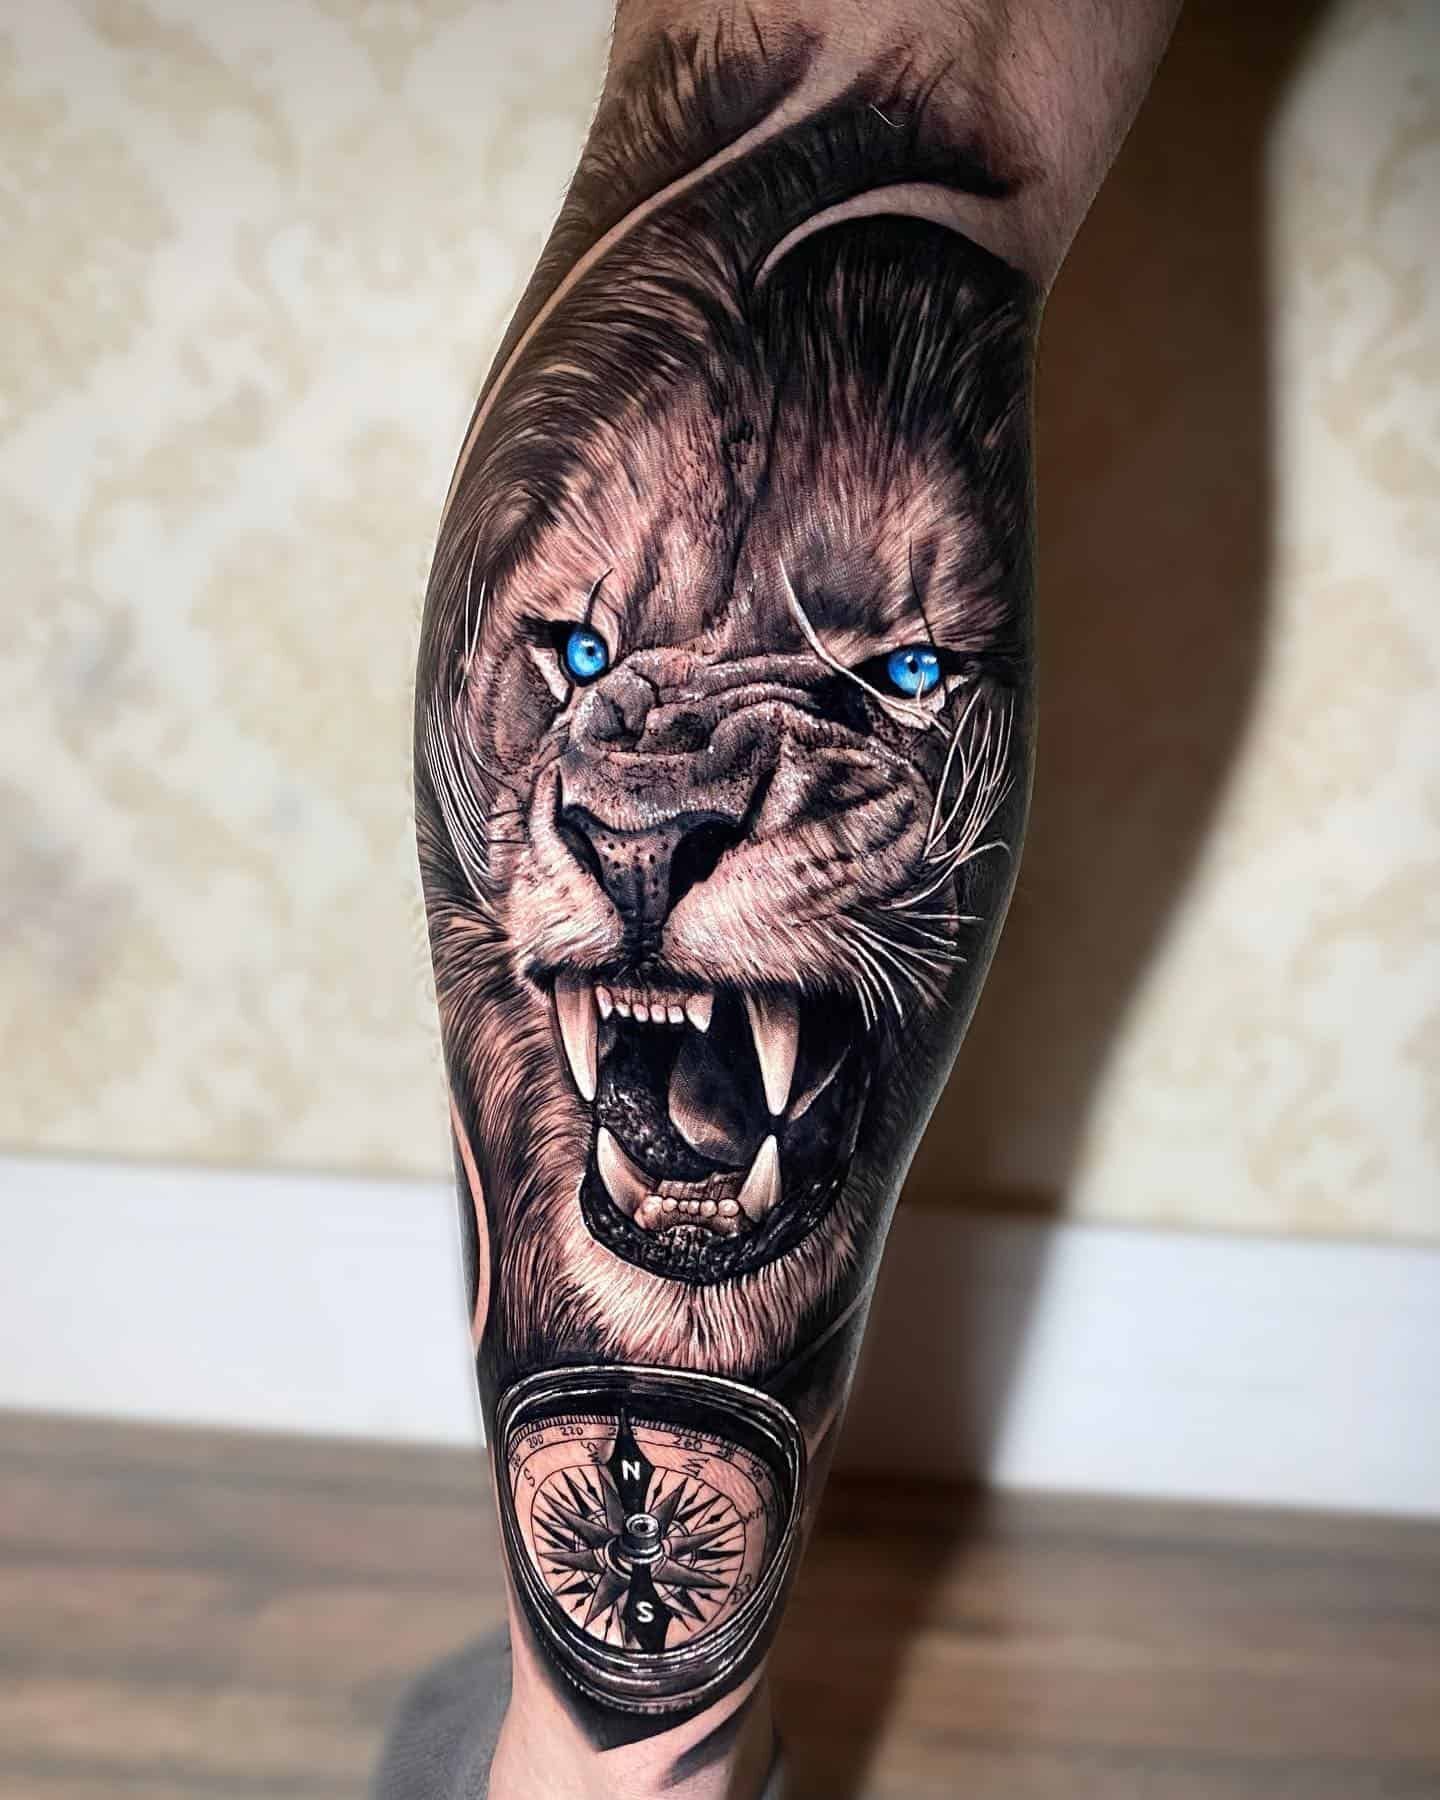 Lion Leg Tattoos For Men